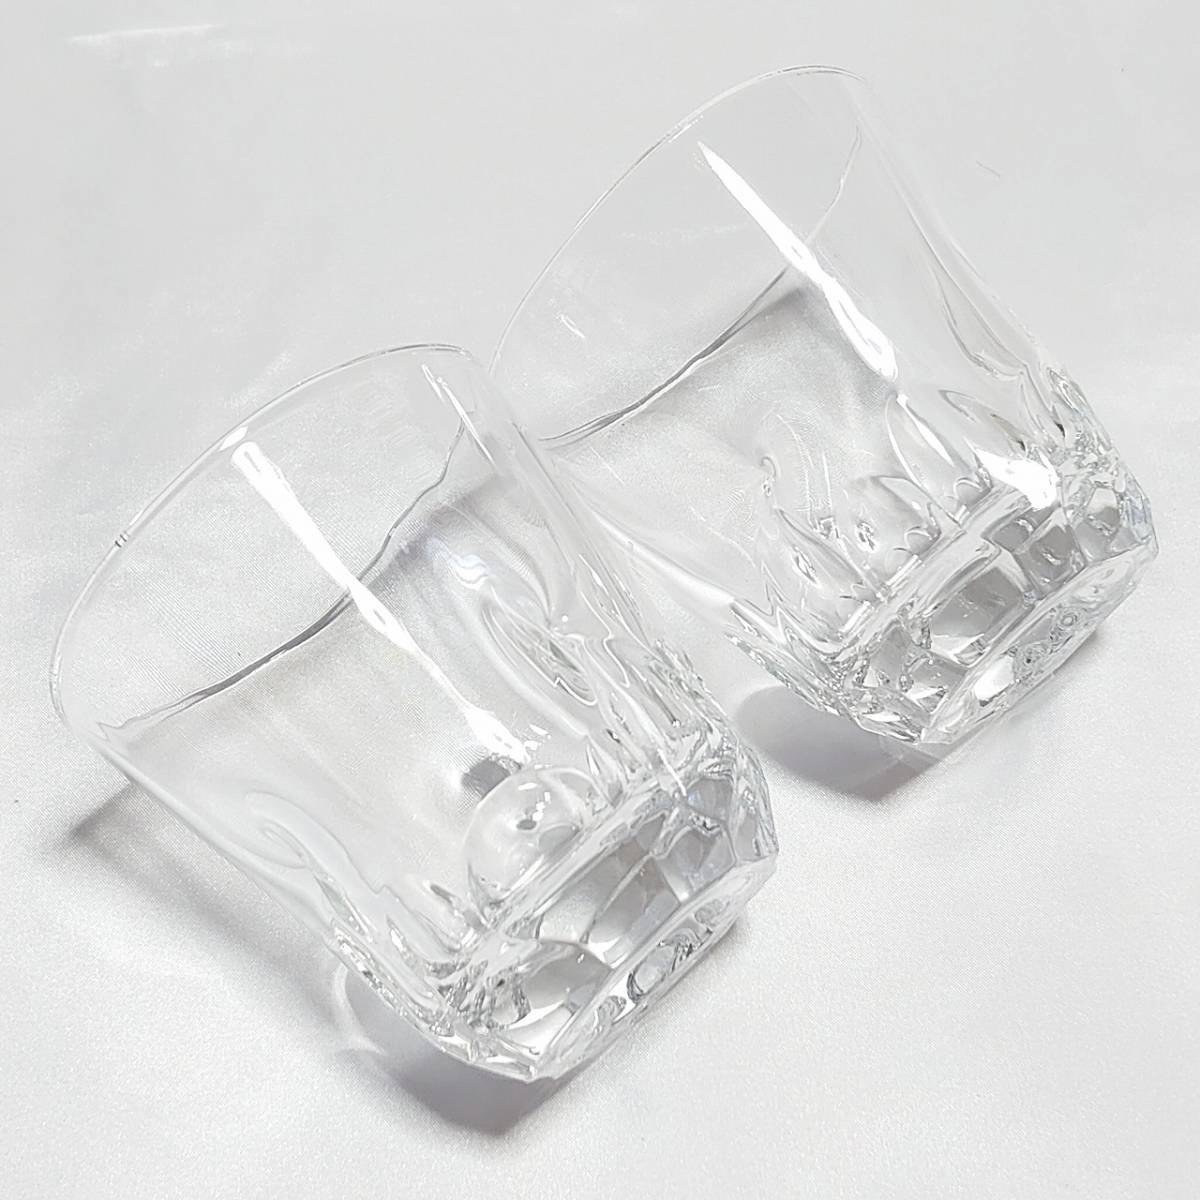 ロックグラス 2個 ペアグラス ガラスコップ 口径約9㎝ 高さ約9.3㎝ 酒器 アルコールグラス 【2169】【r】_画像4